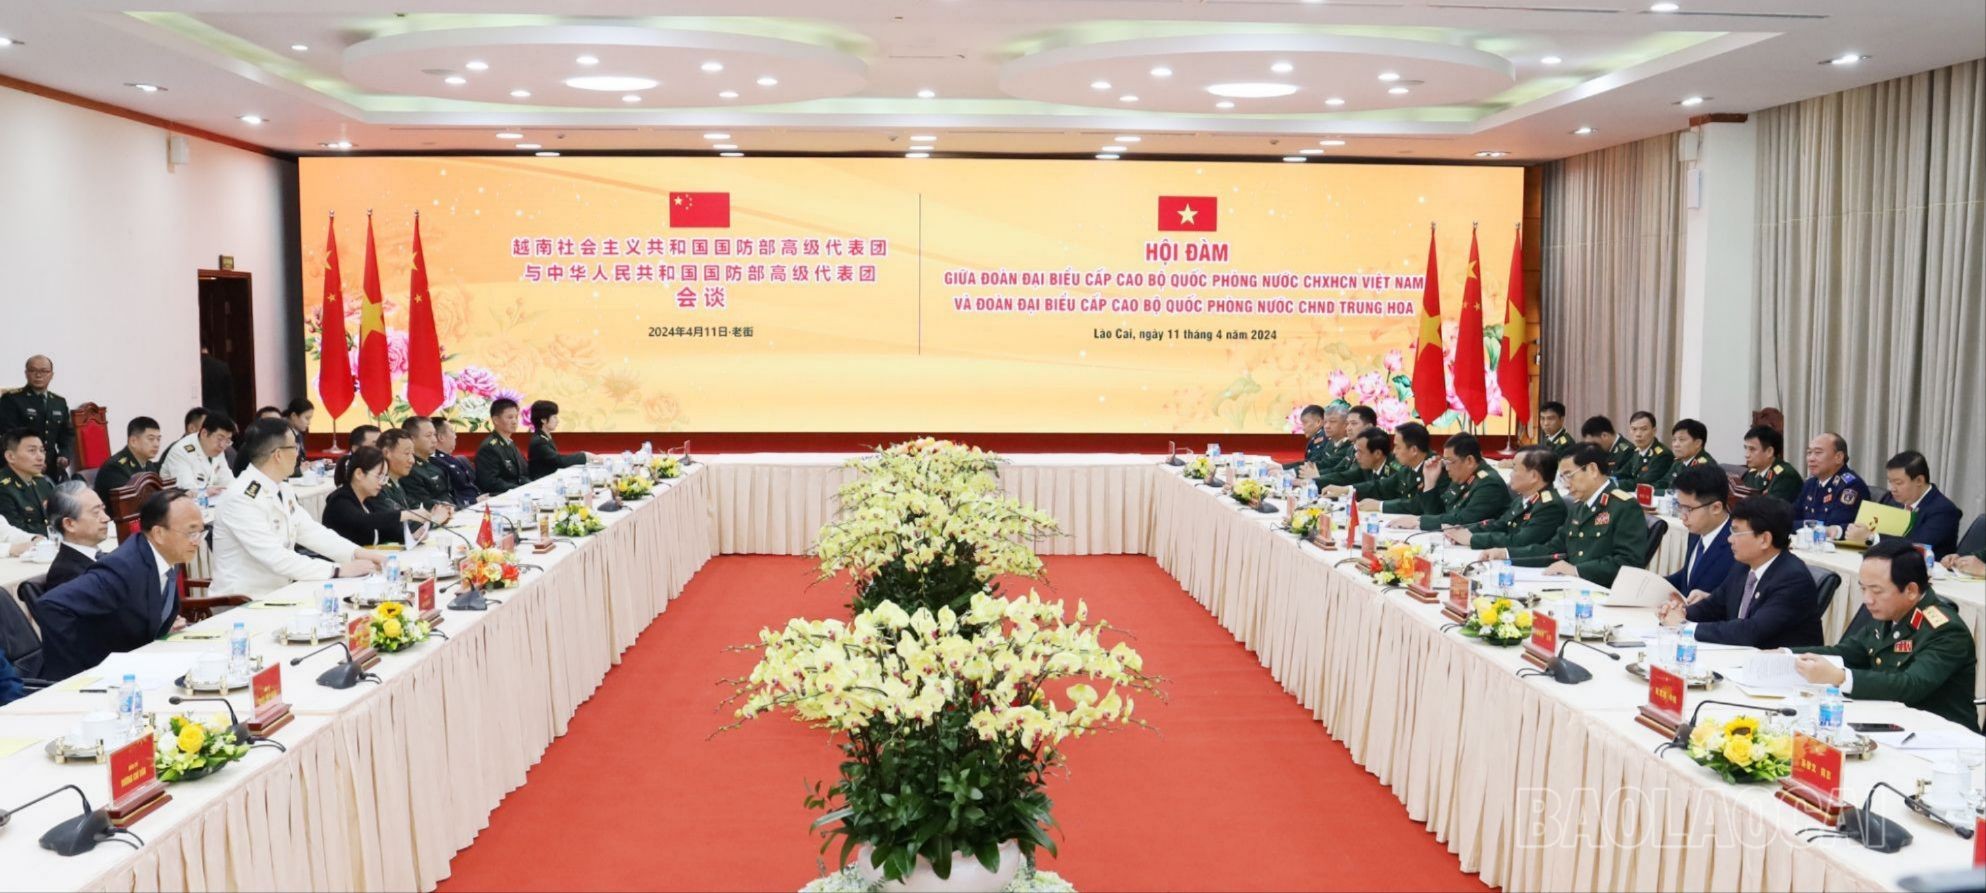 Bộ trưởng Bộ Quốc phòng Việt Nam Phan Văn Giang đã hội đàm với Bộ trưởng Bộ Quốc phòng Trung Quốc Đổng Quân